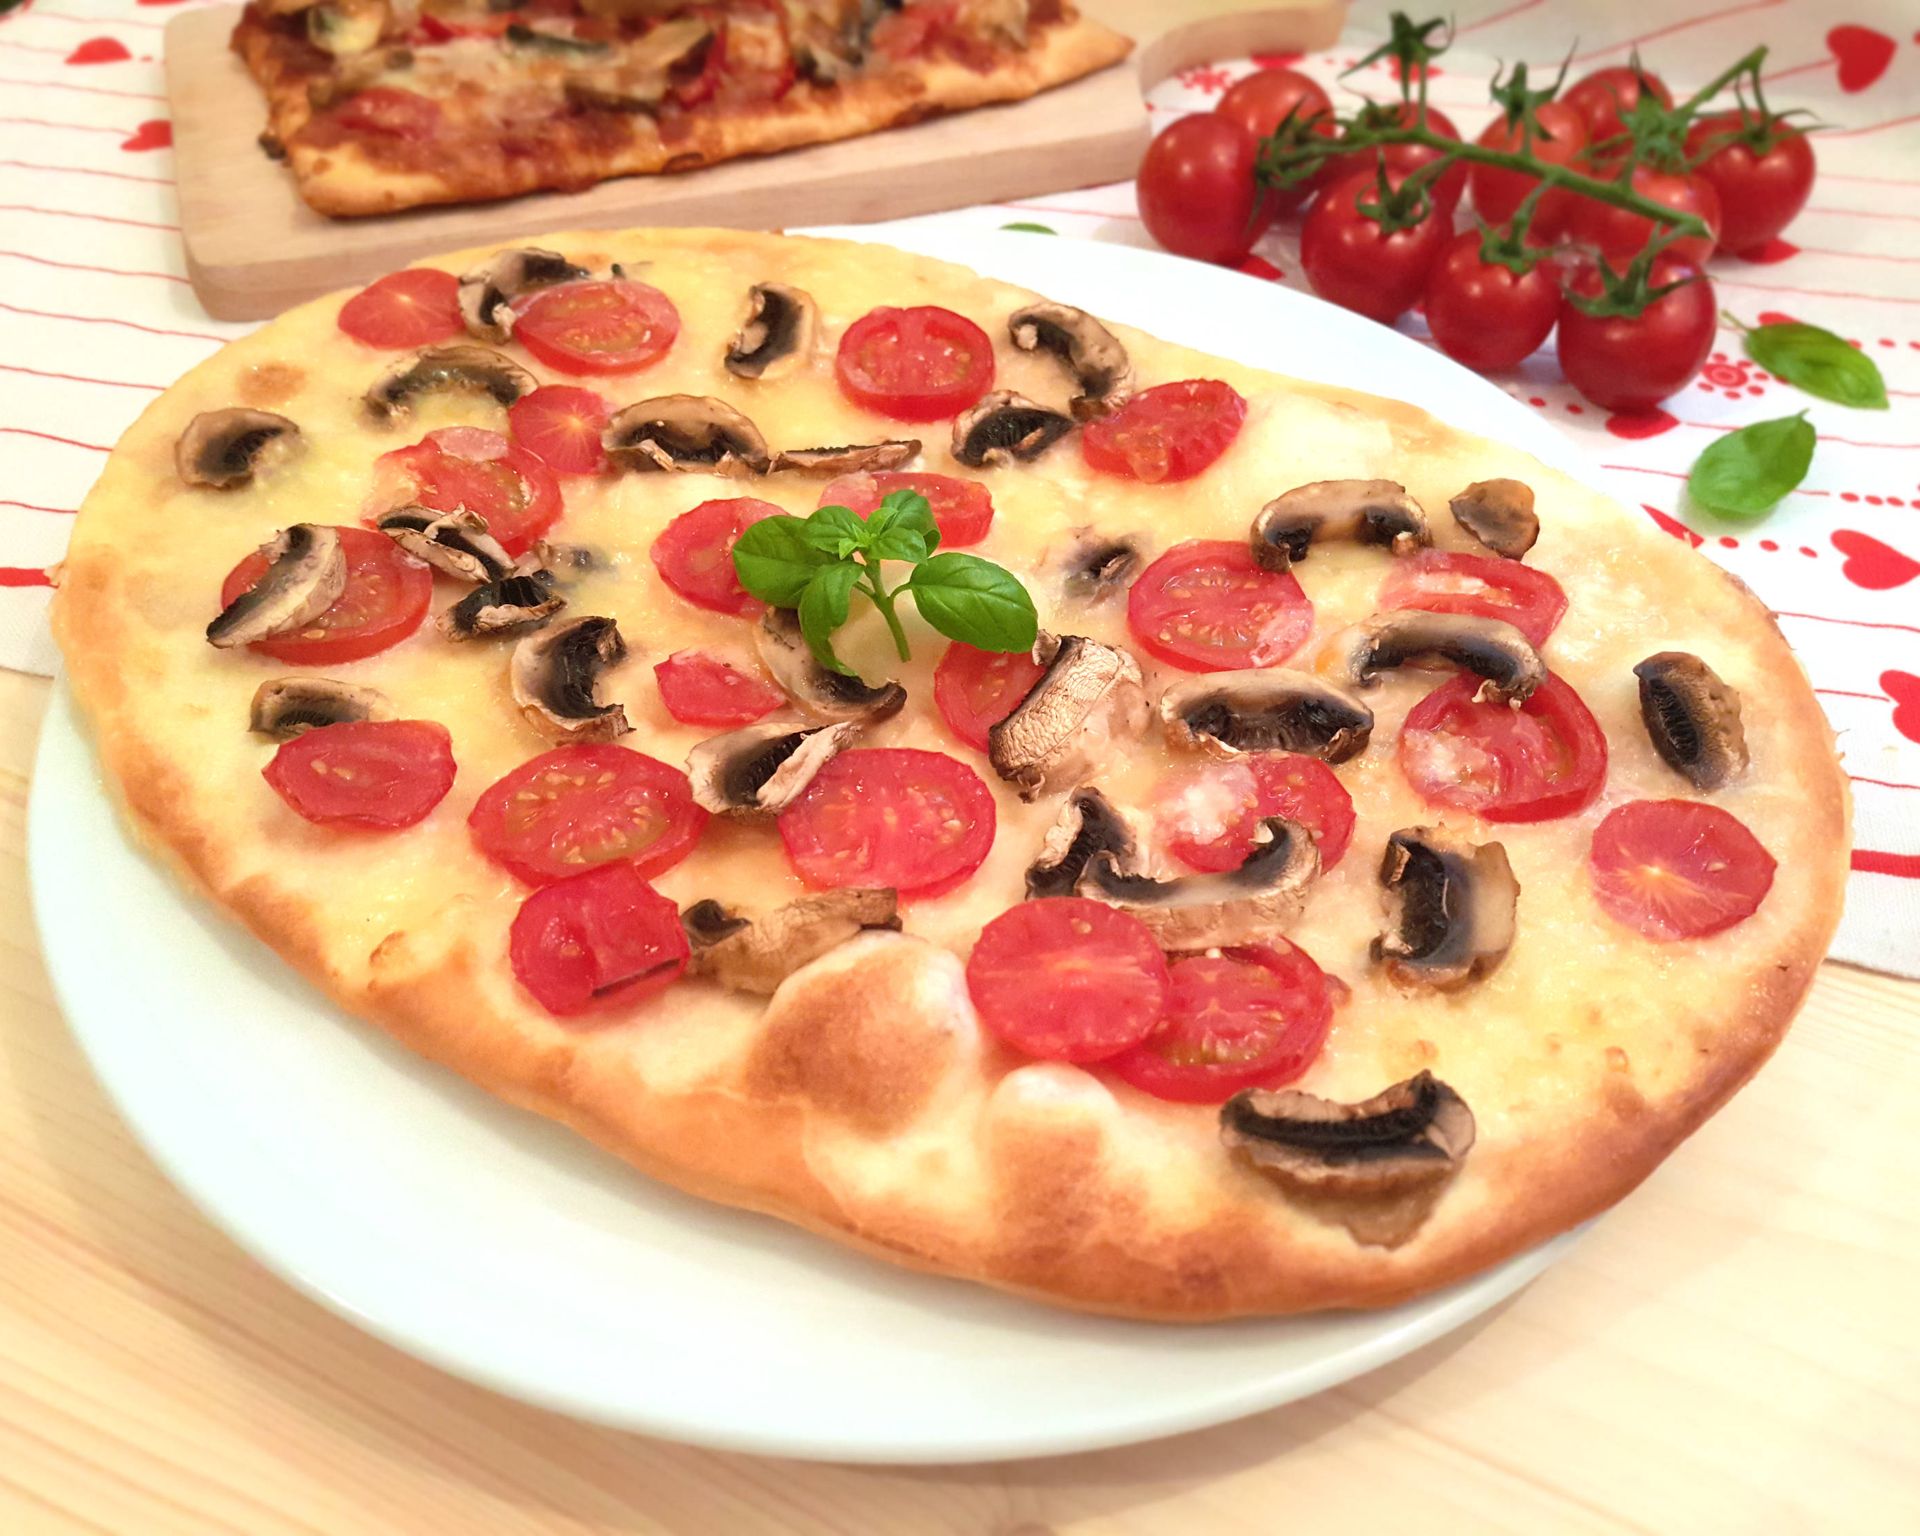 Smotanová pizza s mozzarellou, paradajkami a šampiňónmi na bielom pizza tanieri, v pozadí ďalšia pizza a cherry paradajky